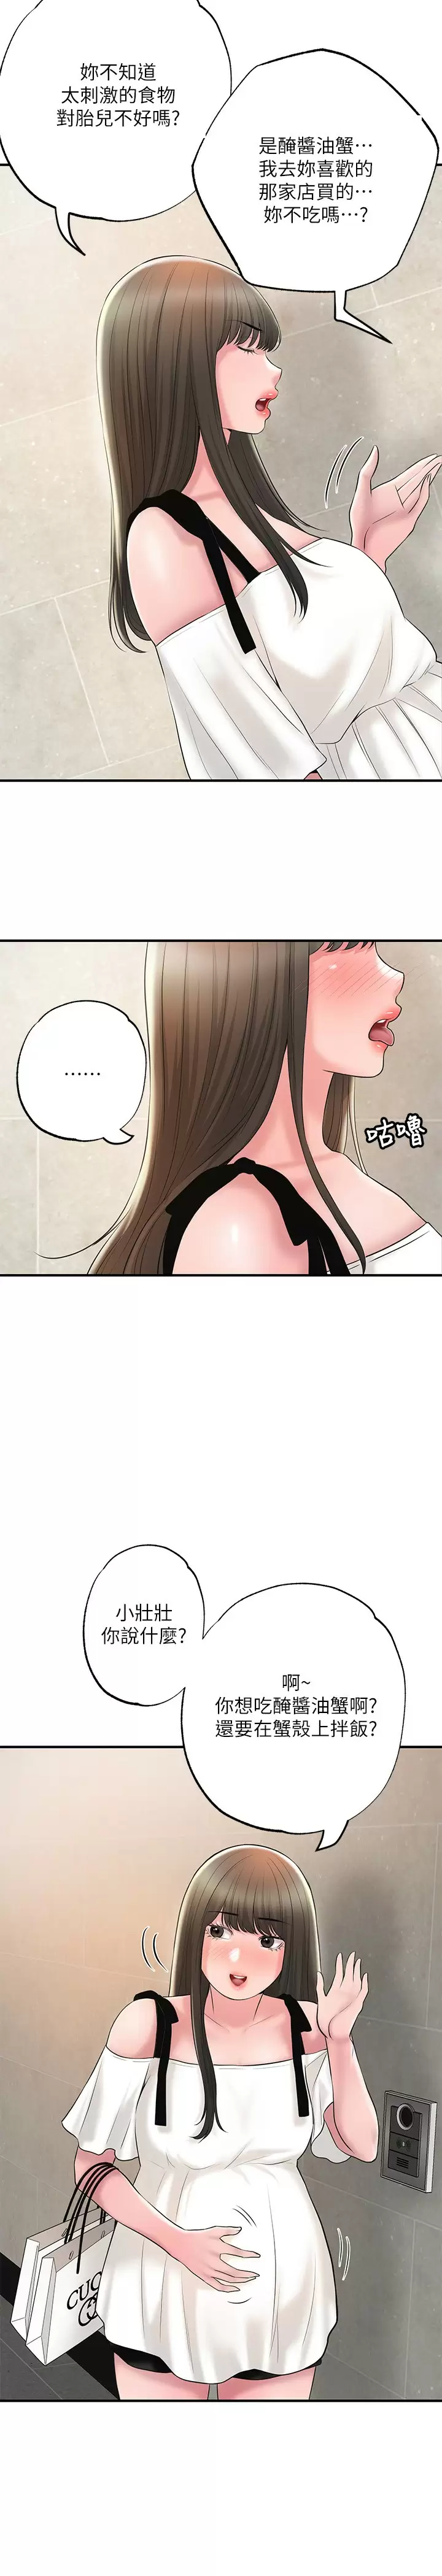 韩国污漫画 幸福督市 第64话 回味美珠姐丰满的胸部 11